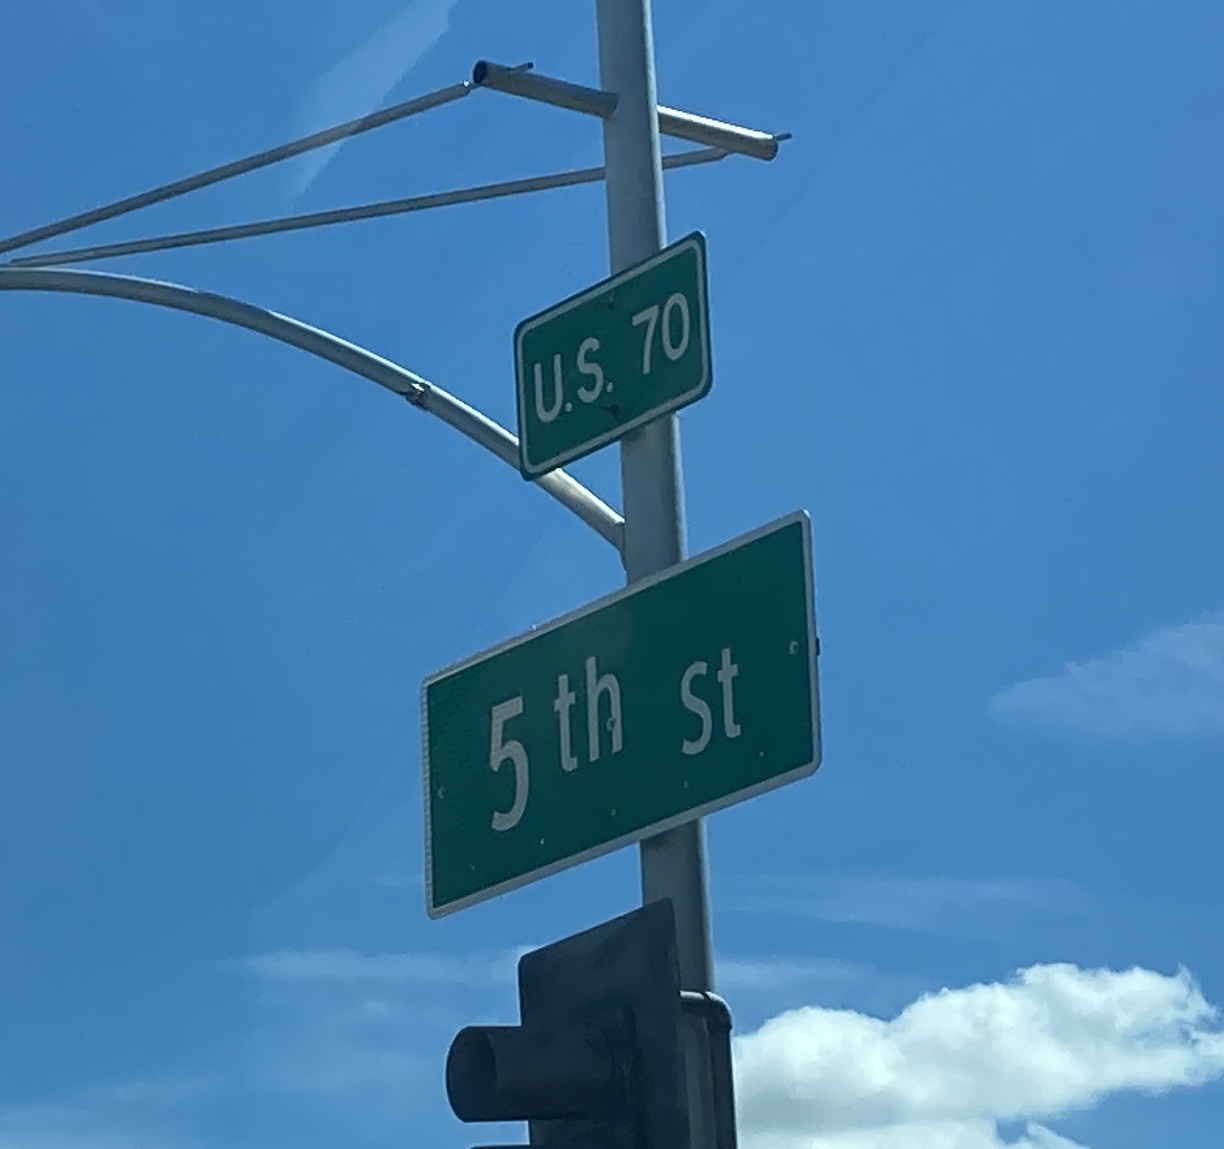 US70E/5th Ave